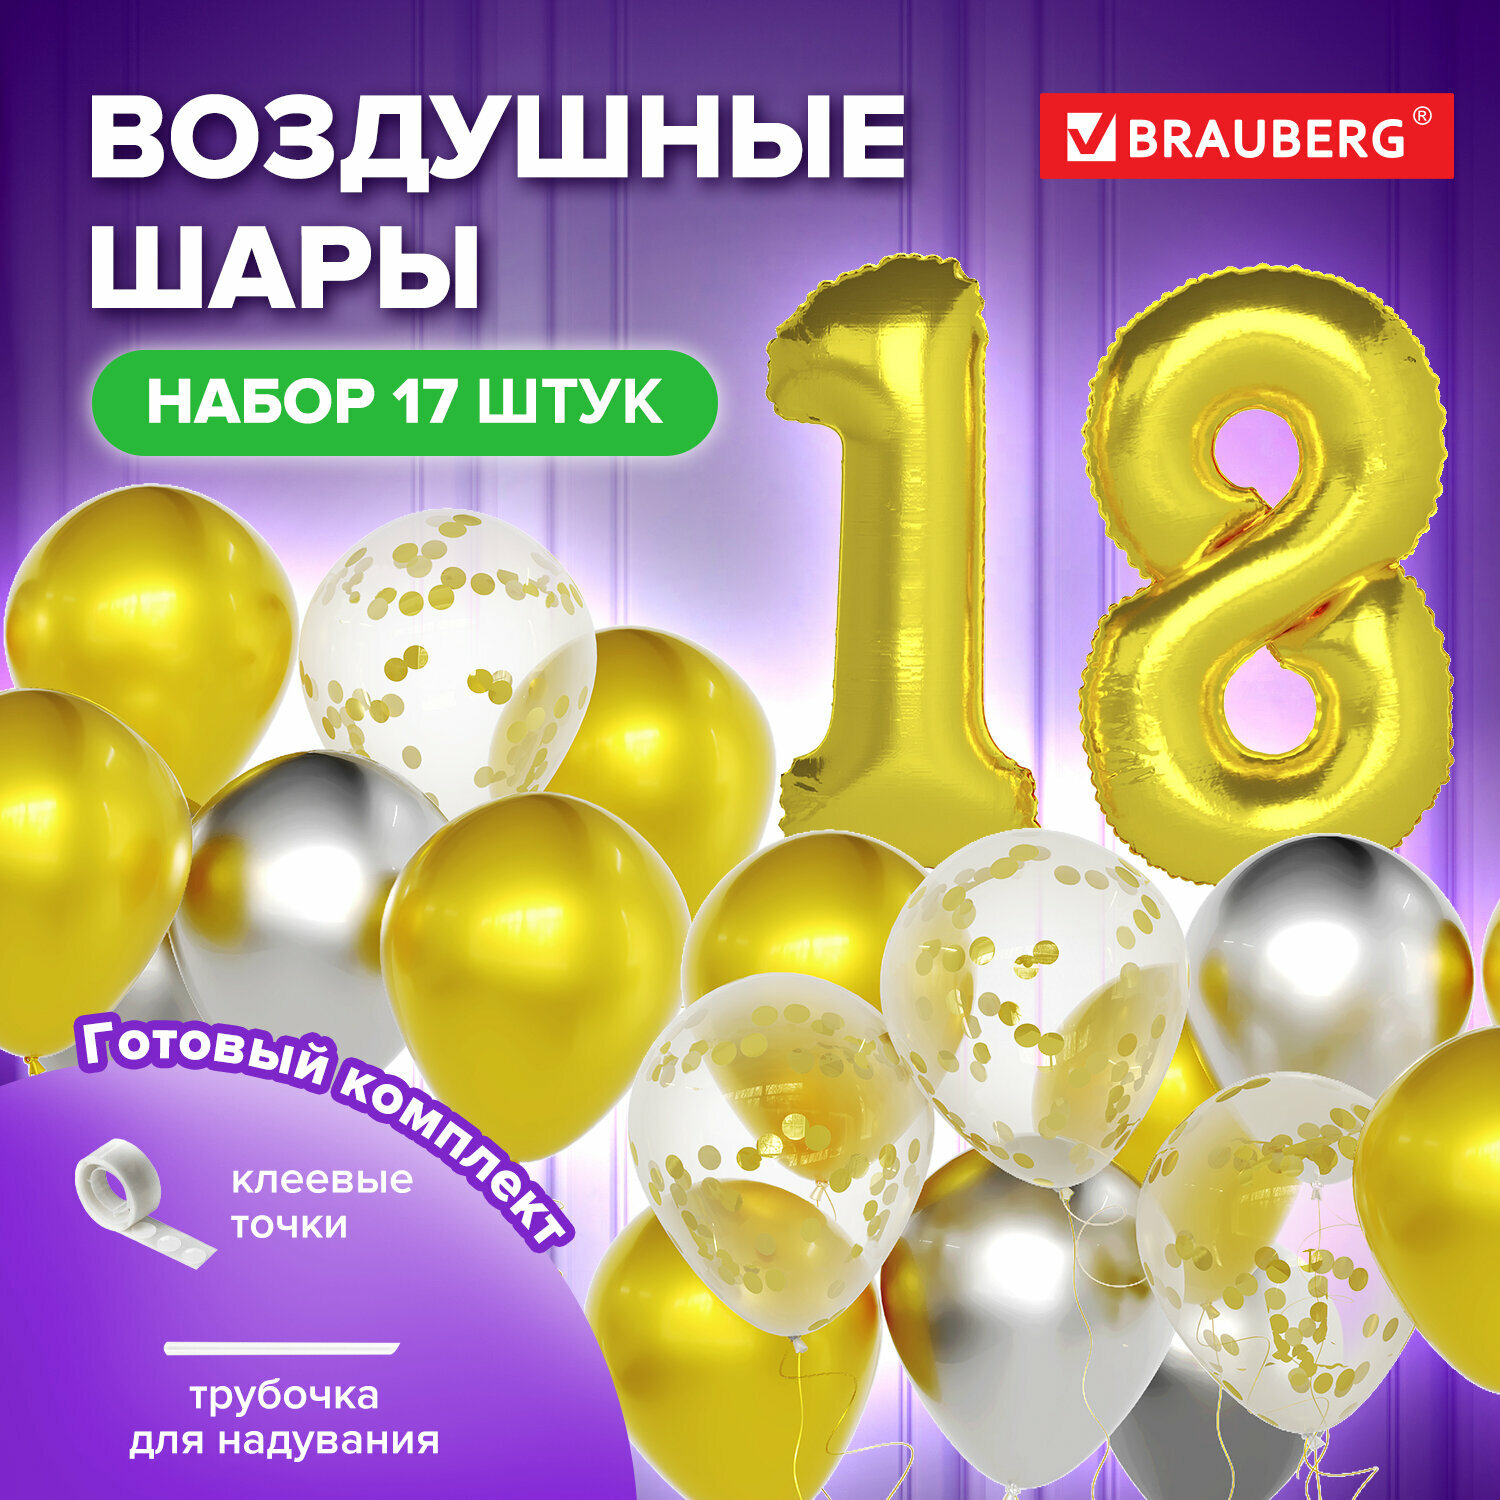 Набор воздушных шаров, композиция из объемных шаров Для Декора 18 лет, 17 шаров, золото/серебро, Brauberg, 591900